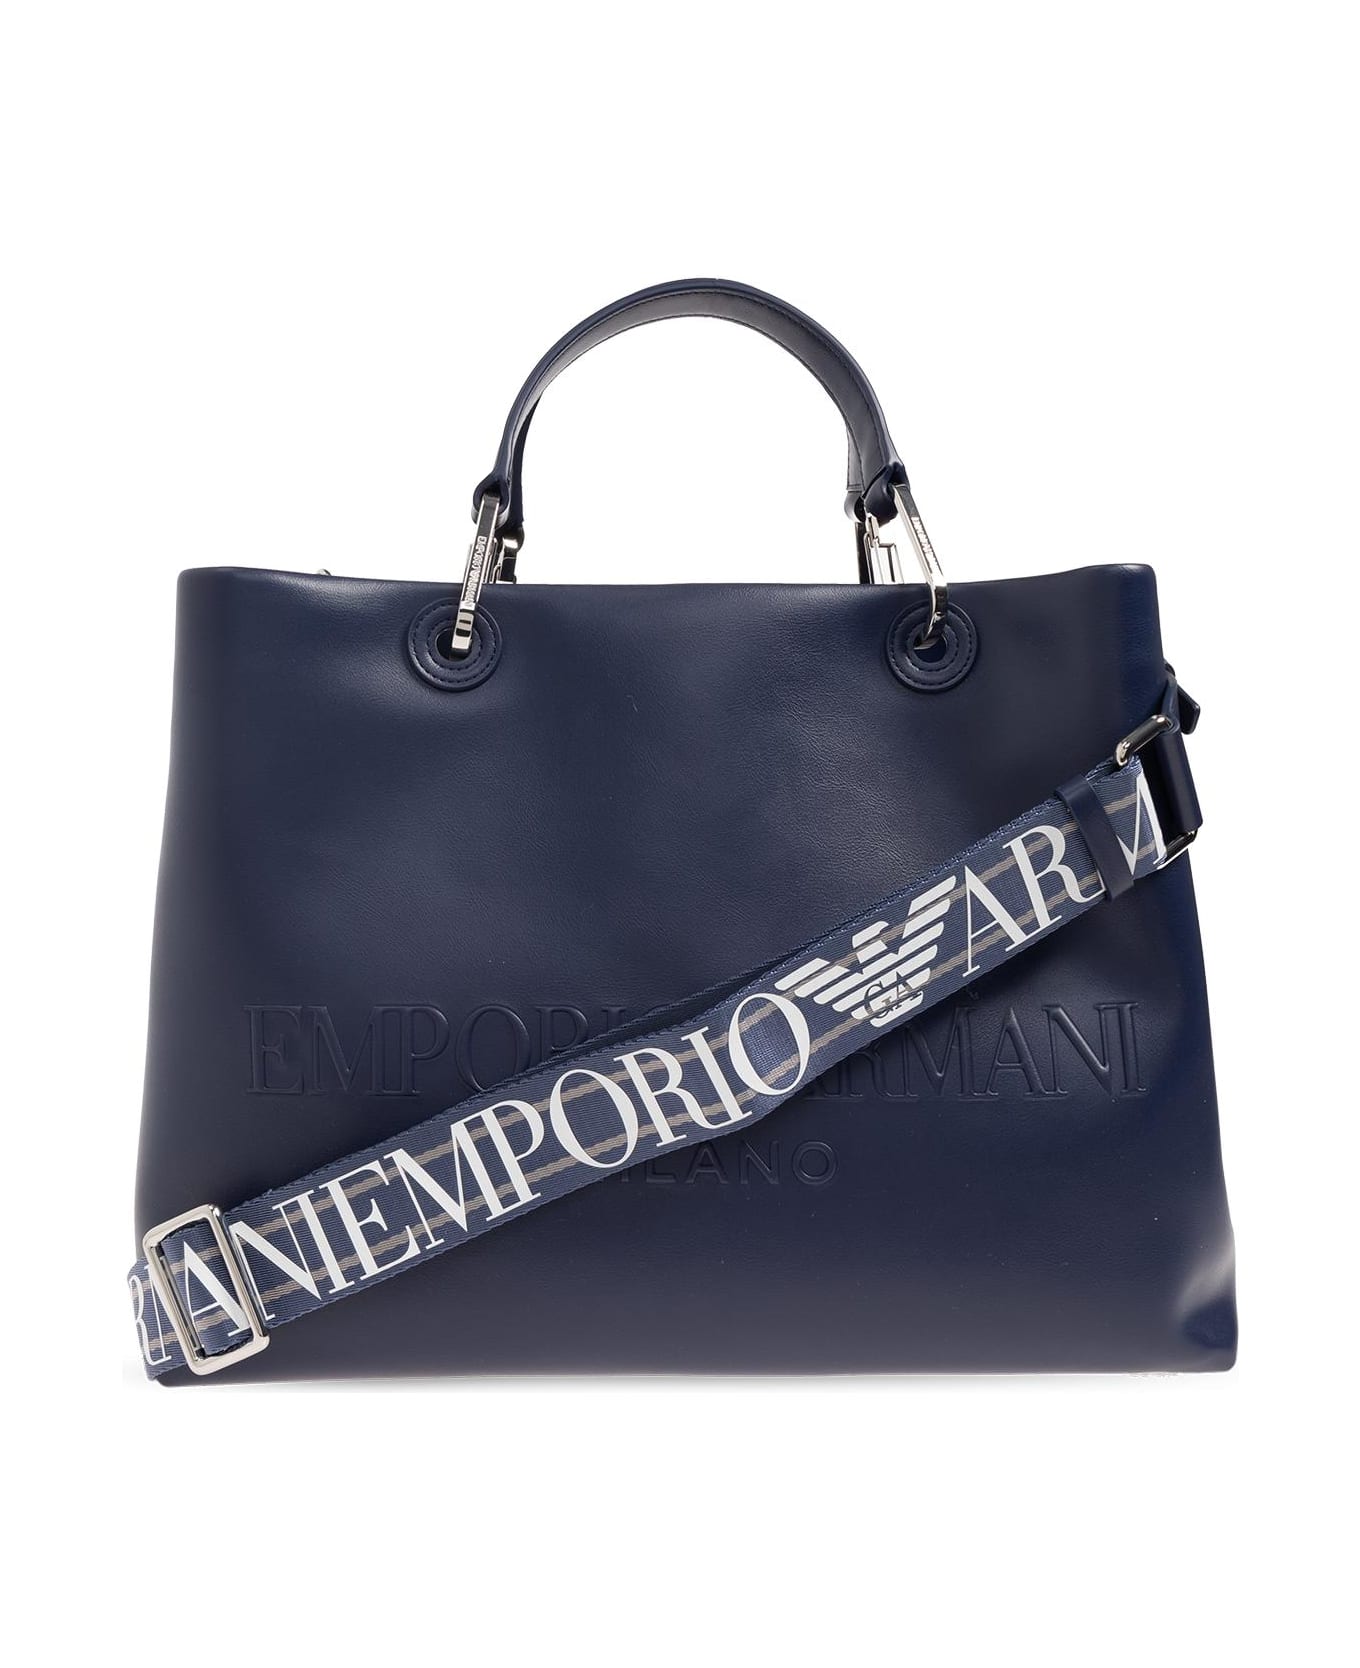 Emporio Armani Shopper Bag With Logo トートバッグ